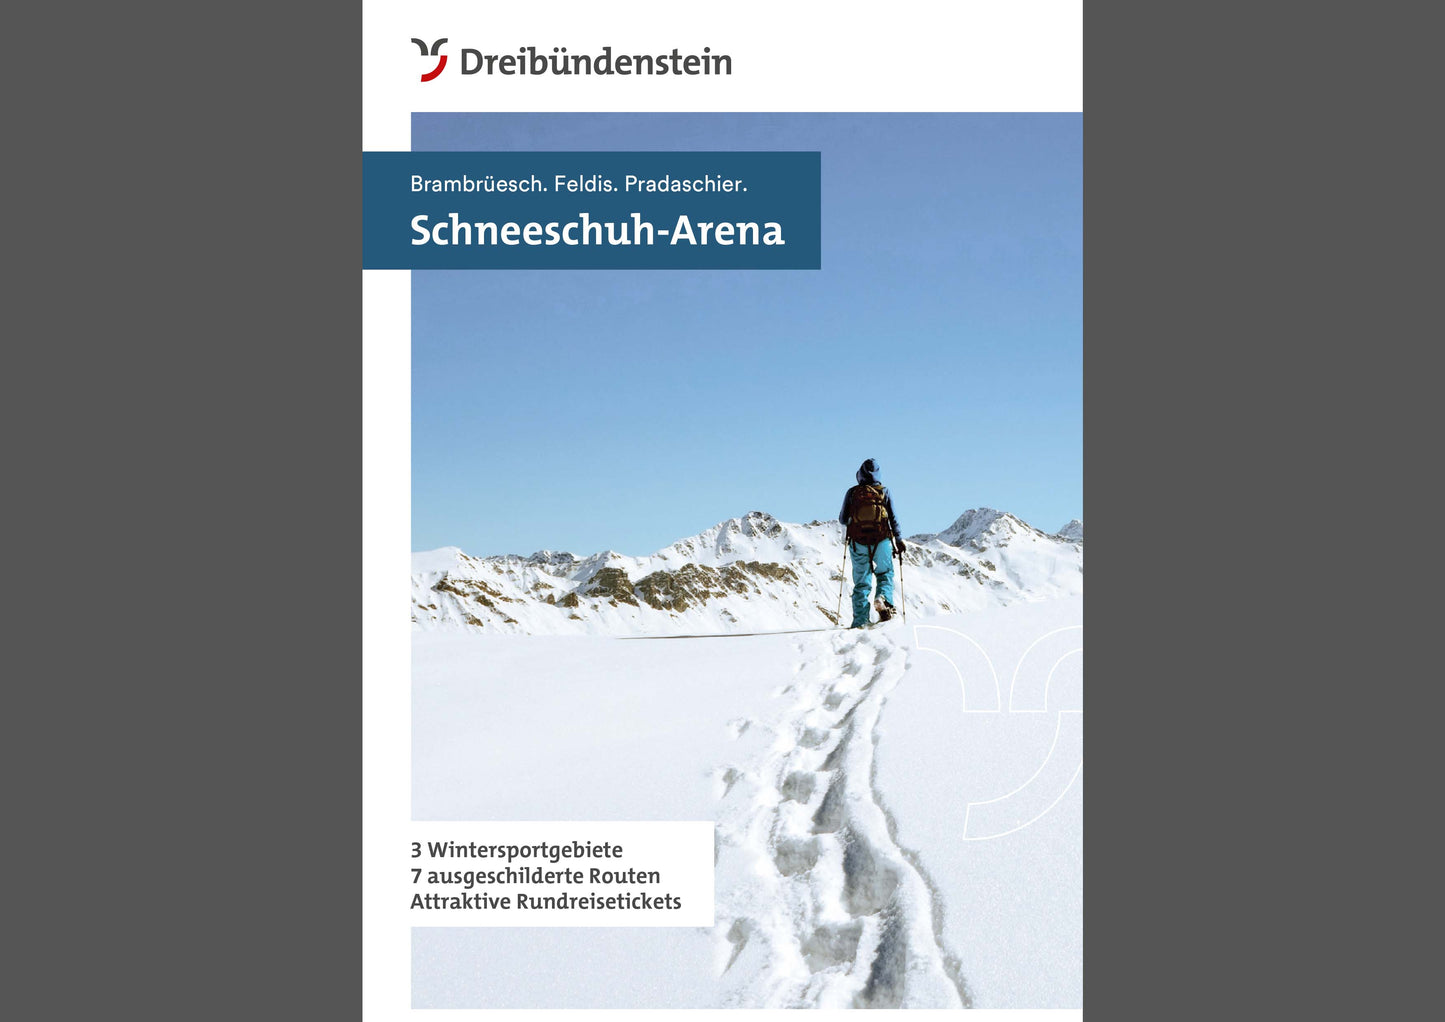 Schneeschuh-Arena Dreibündenstein